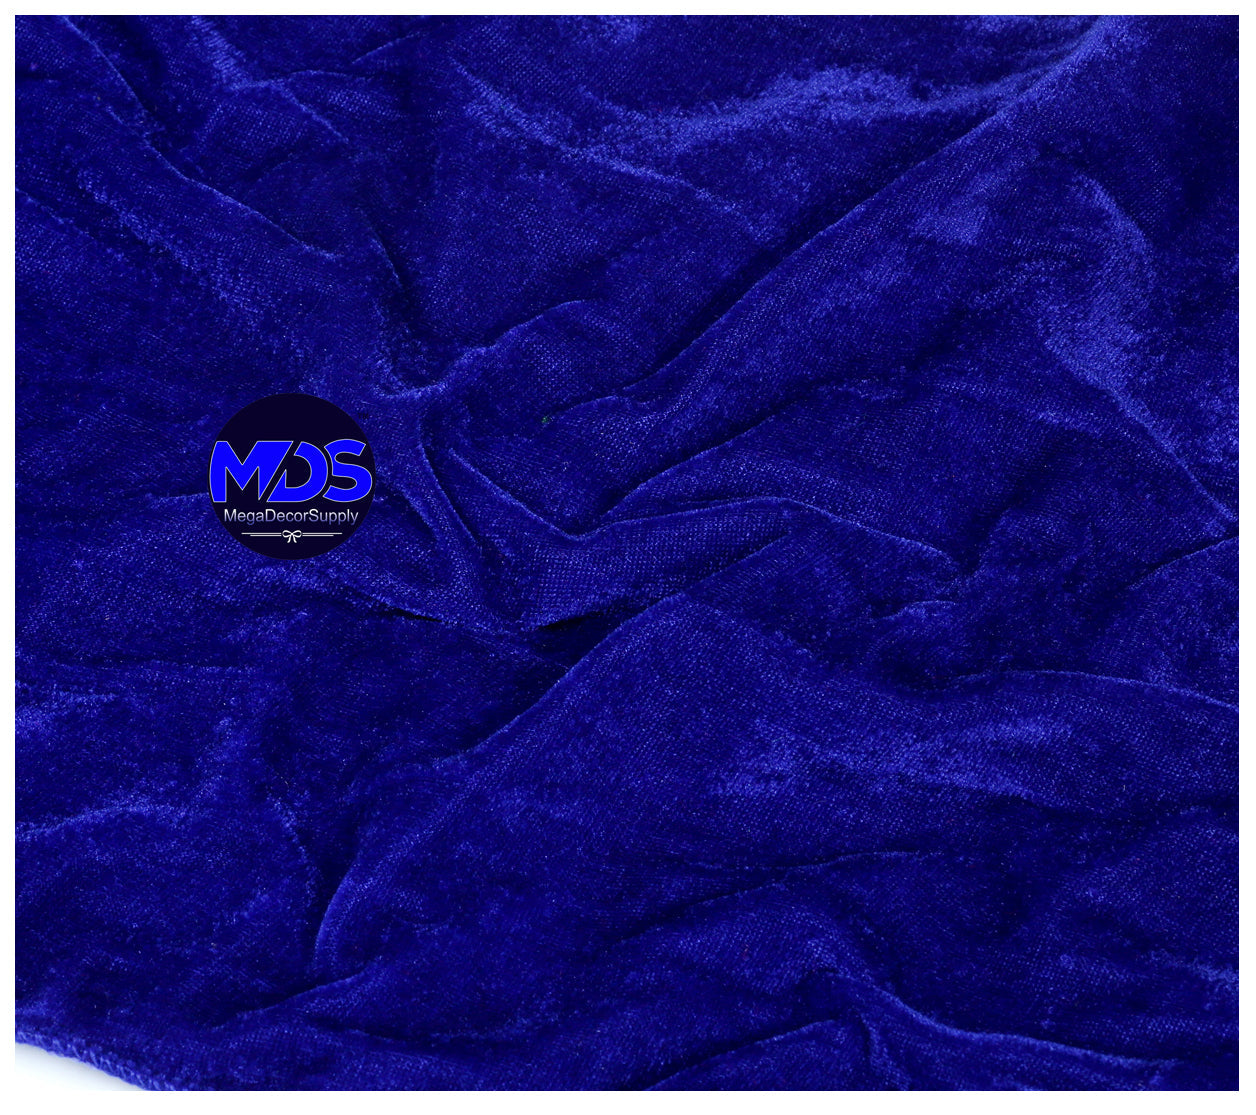 Royal Blue,6b8298fe-d544-41cd-8803-a138799b1db1